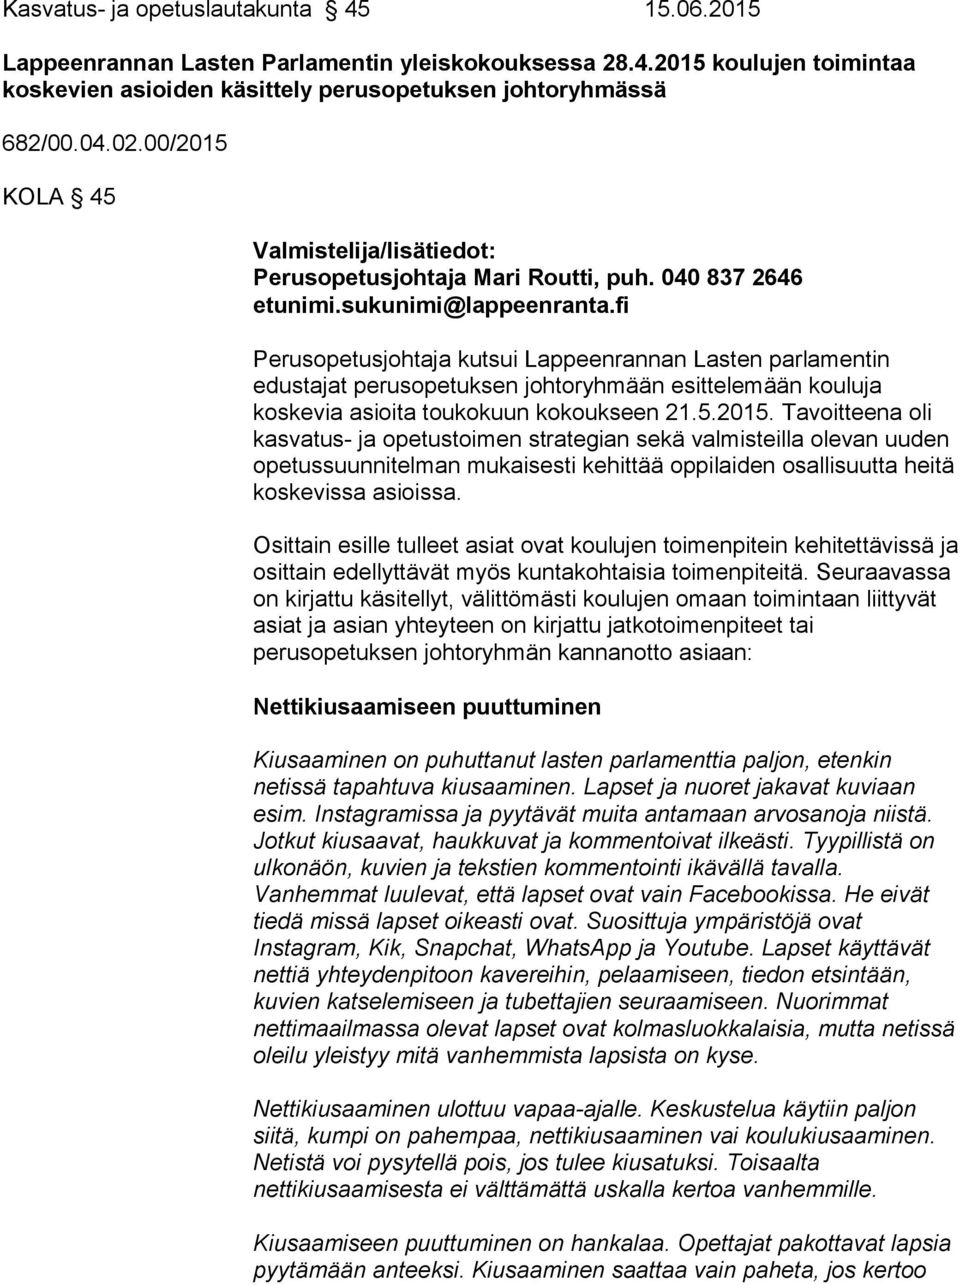 fi Perusopetusjohtaja kutsui Lappeenrannan Lasten parlamentin edustajat perusopetuksen johtoryhmään esittelemään kouluja koskevia asioita toukokuun kokoukseen 21.5.2015.